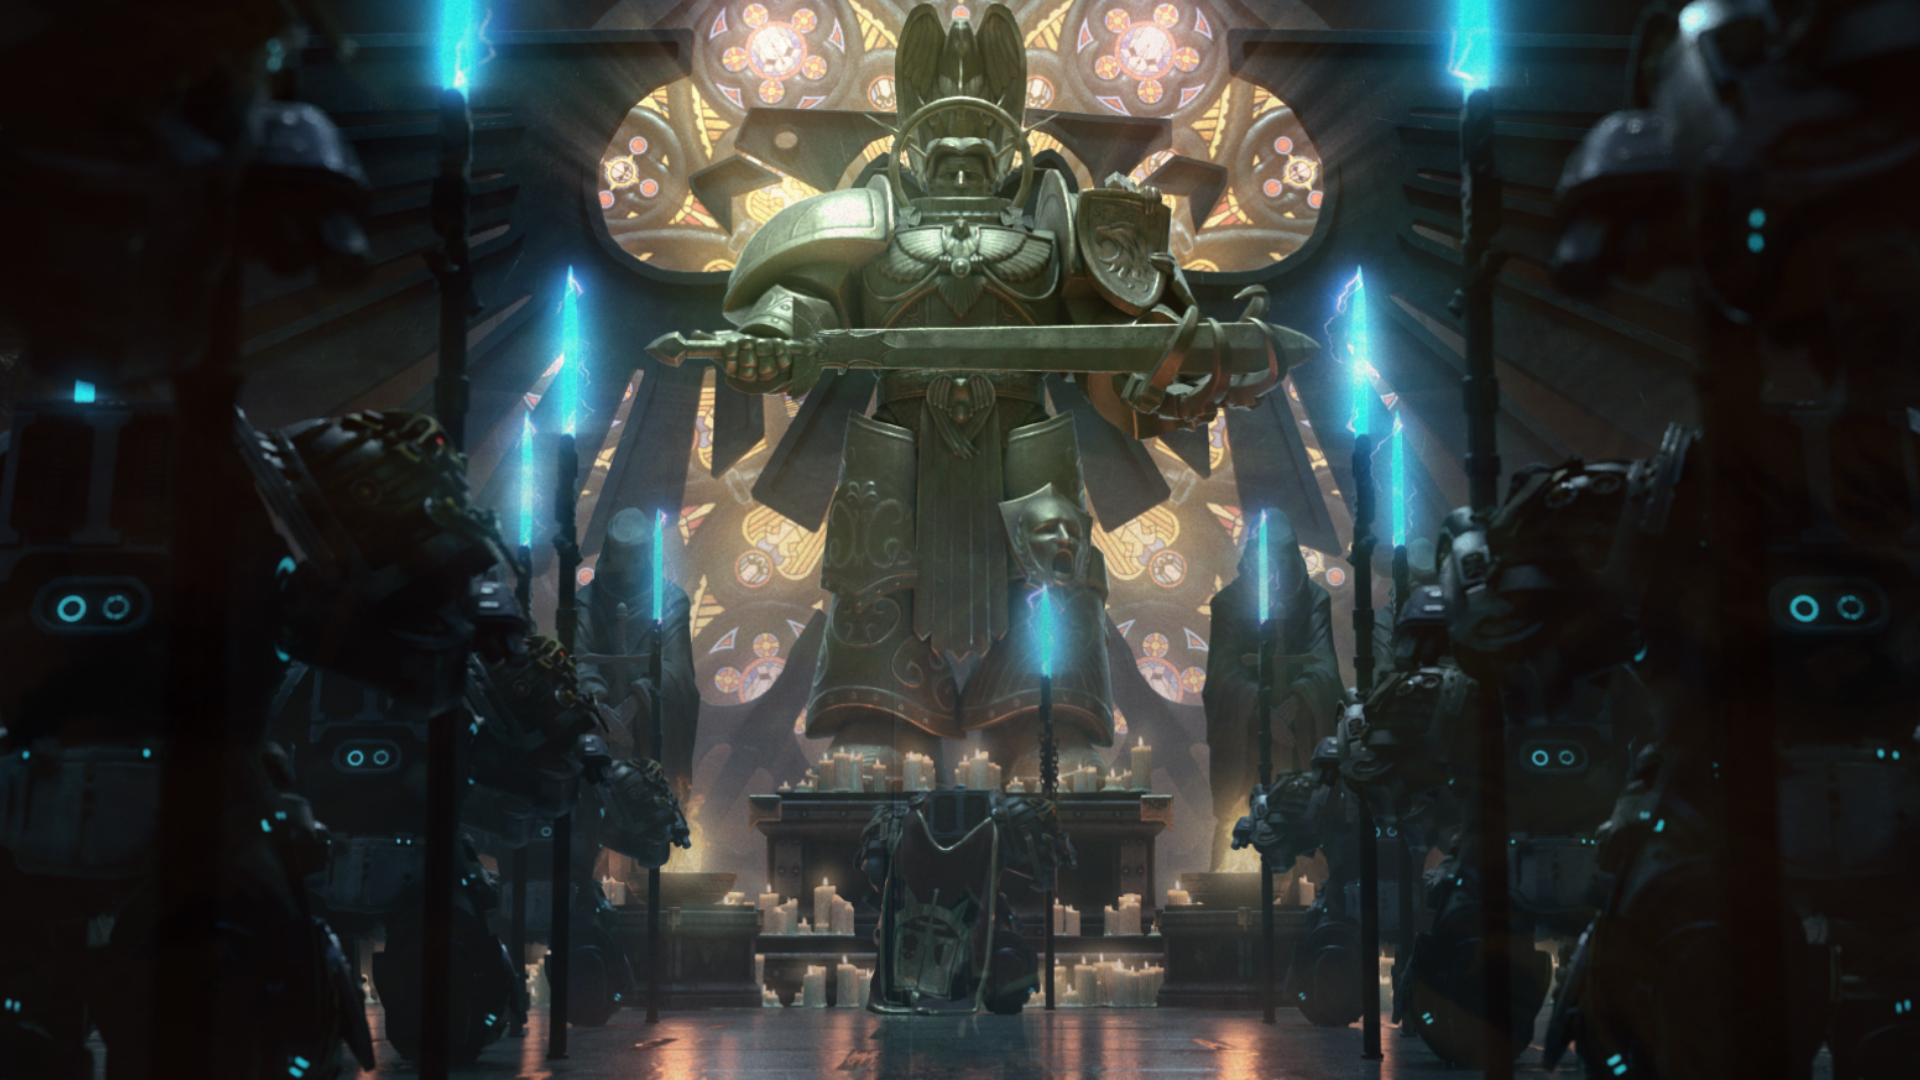 Warhammer 40k: Chaos Gate – Daemonhunters is Space Marine XCOM